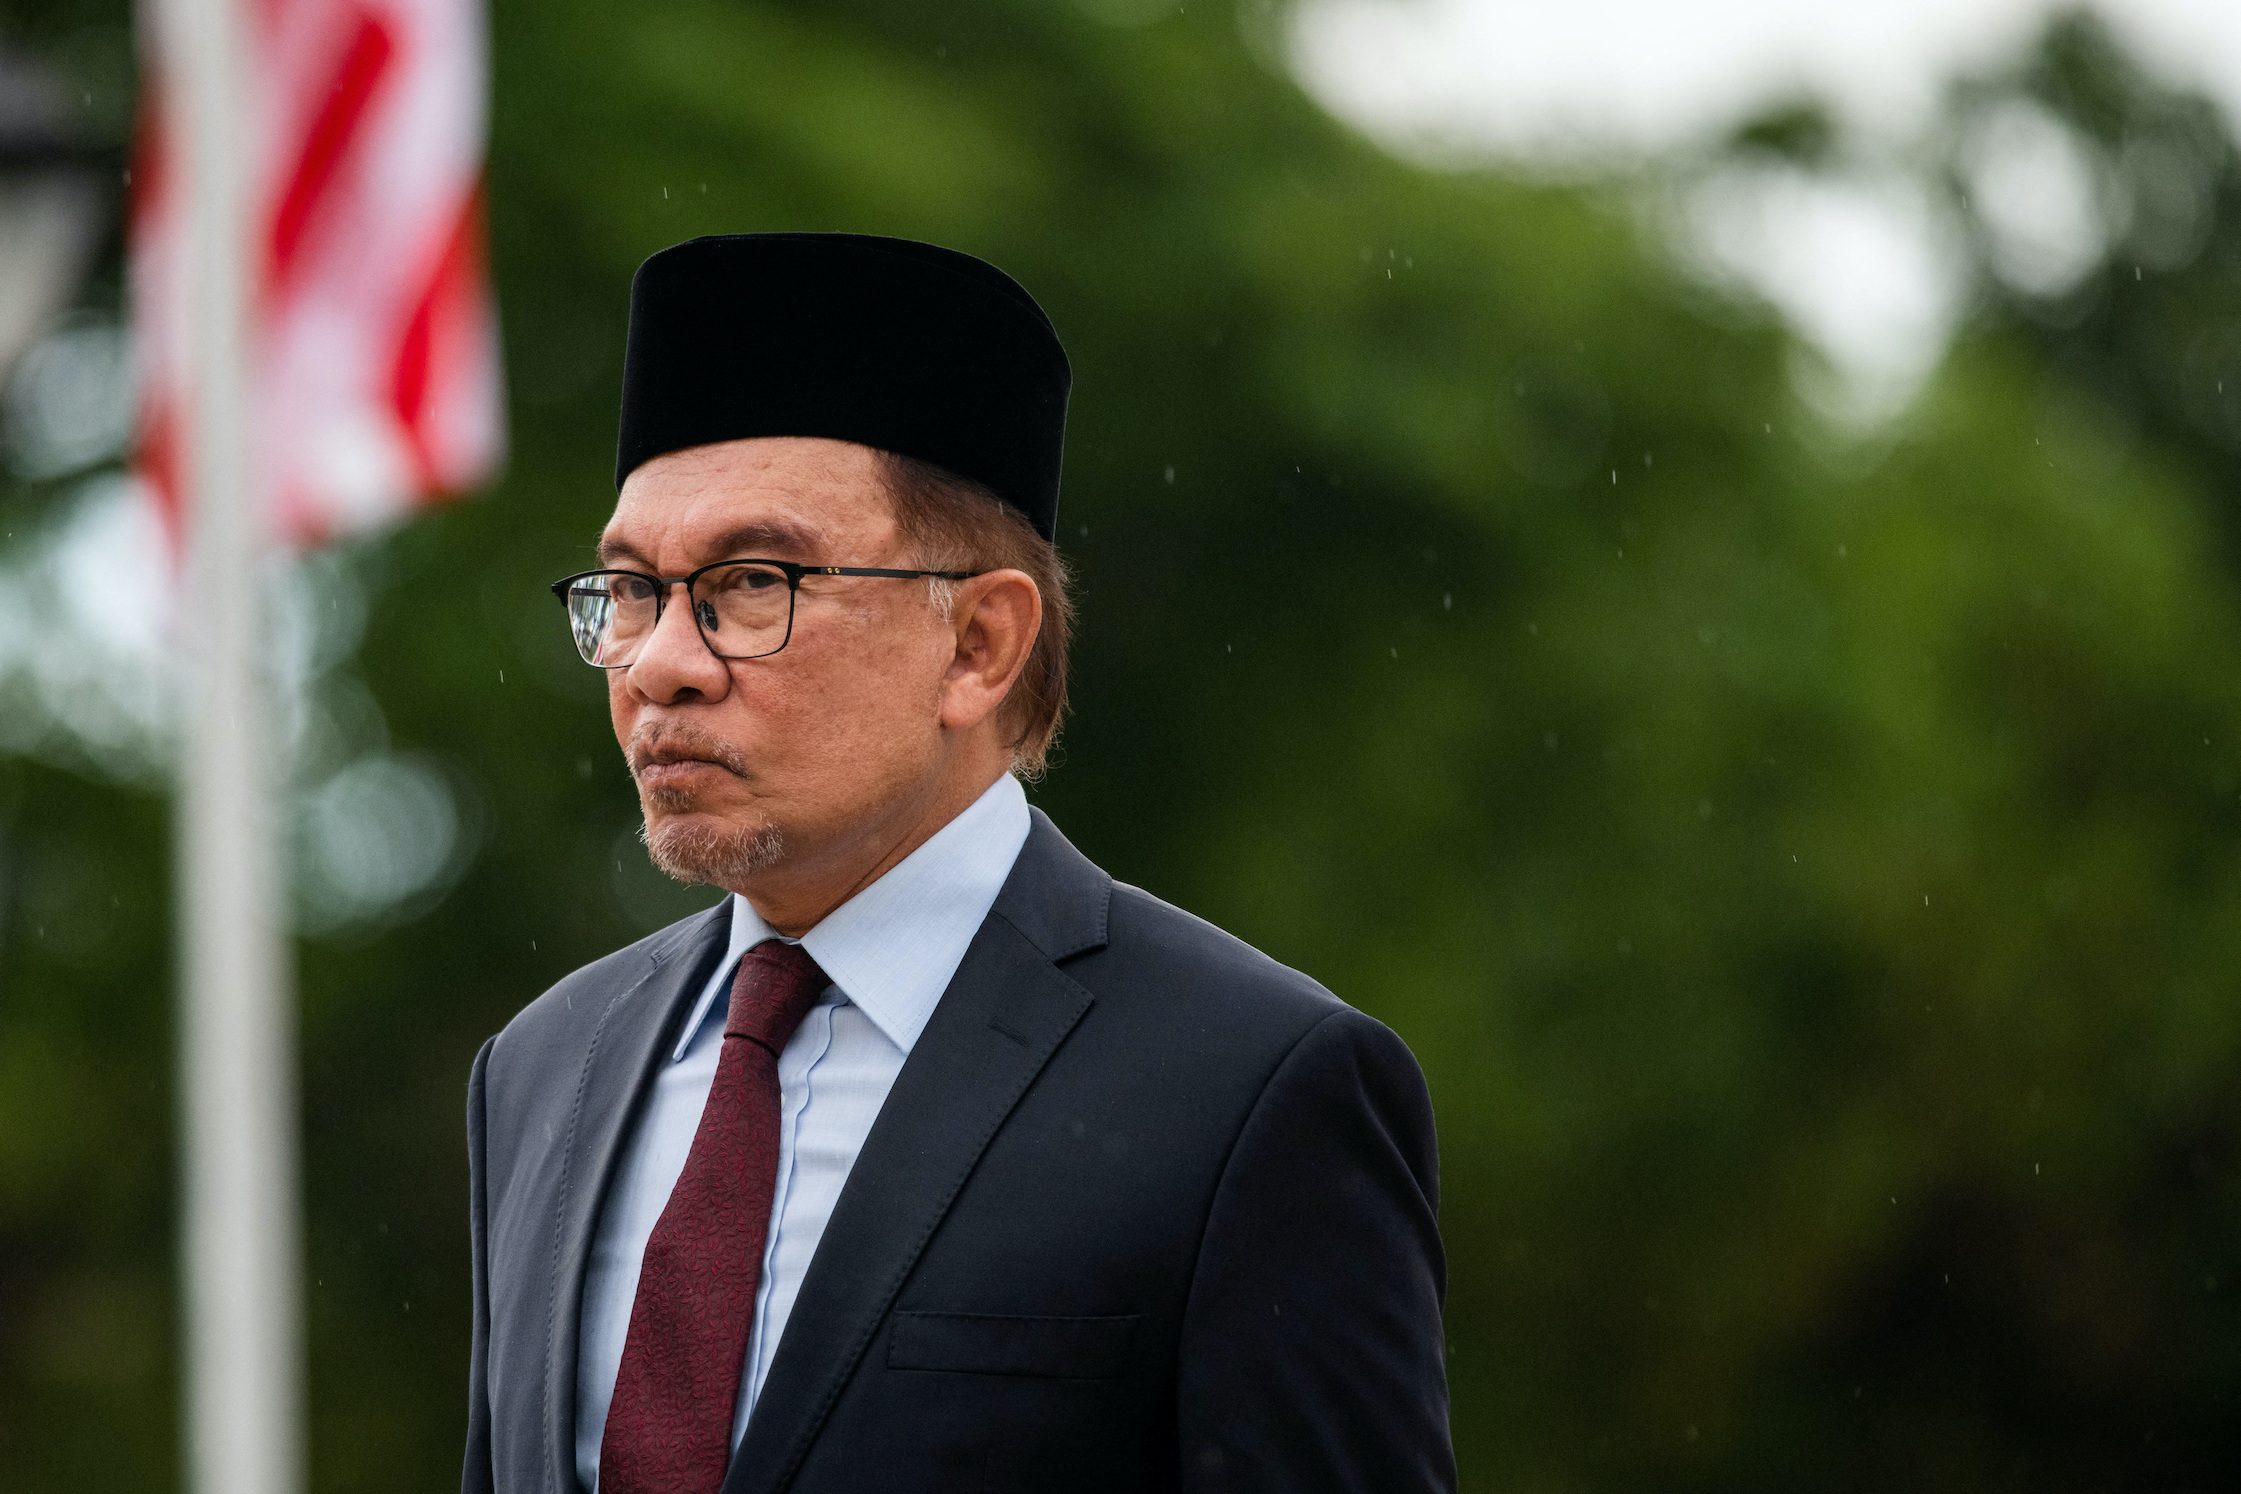 Malaysia seeks to decriminalize suicide attempts